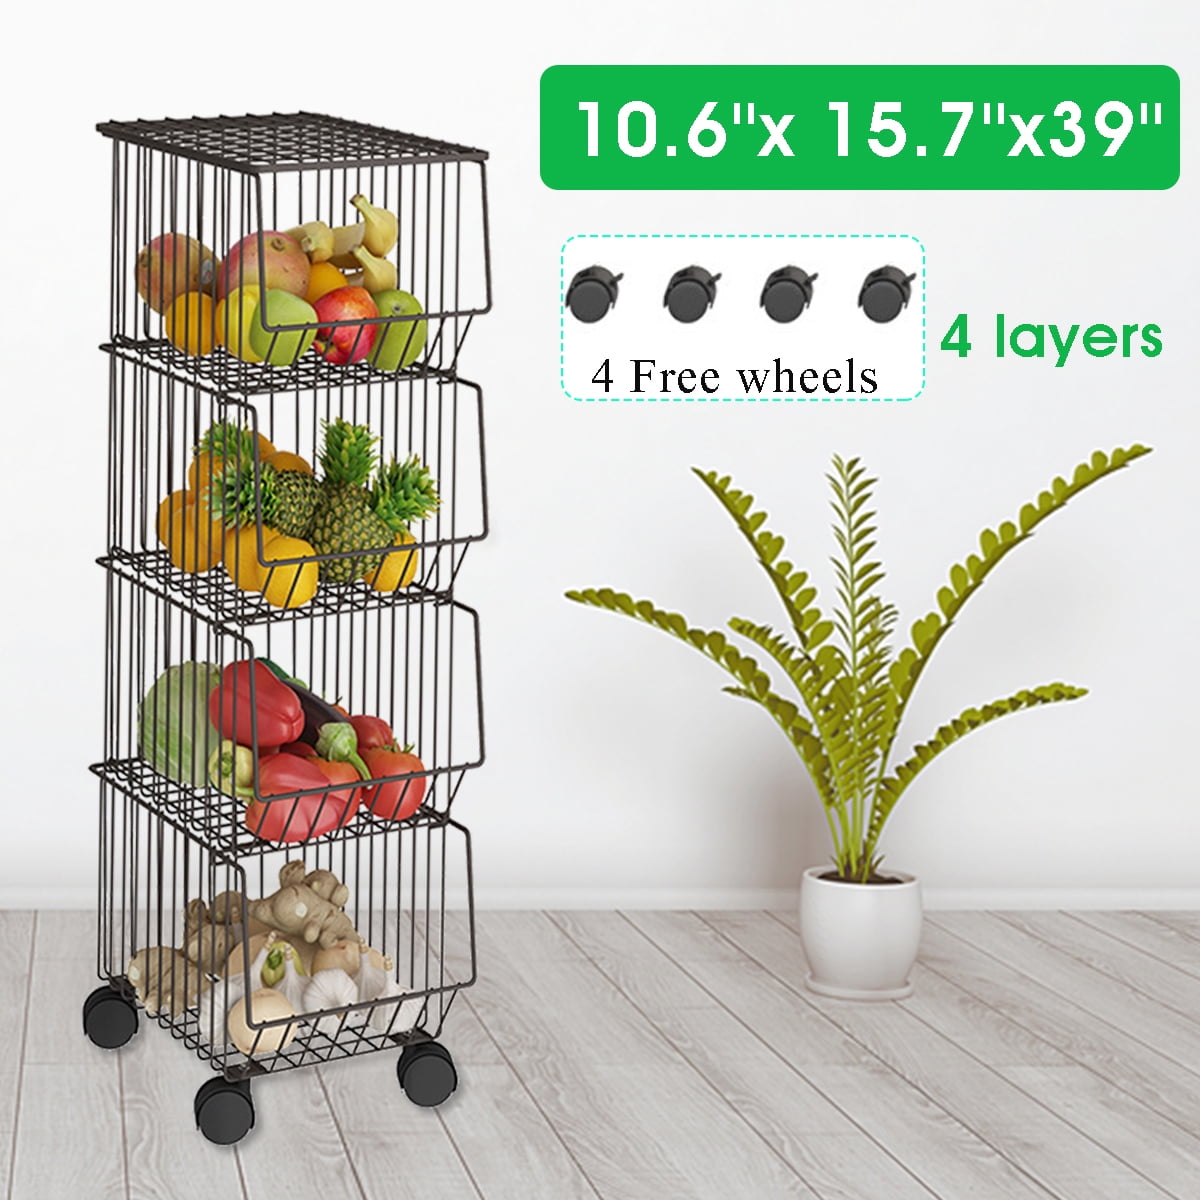 Details about   17" Kitchen Basket Rack Holder Fruit Vegetable 3 Tier Storage Stand Display US 